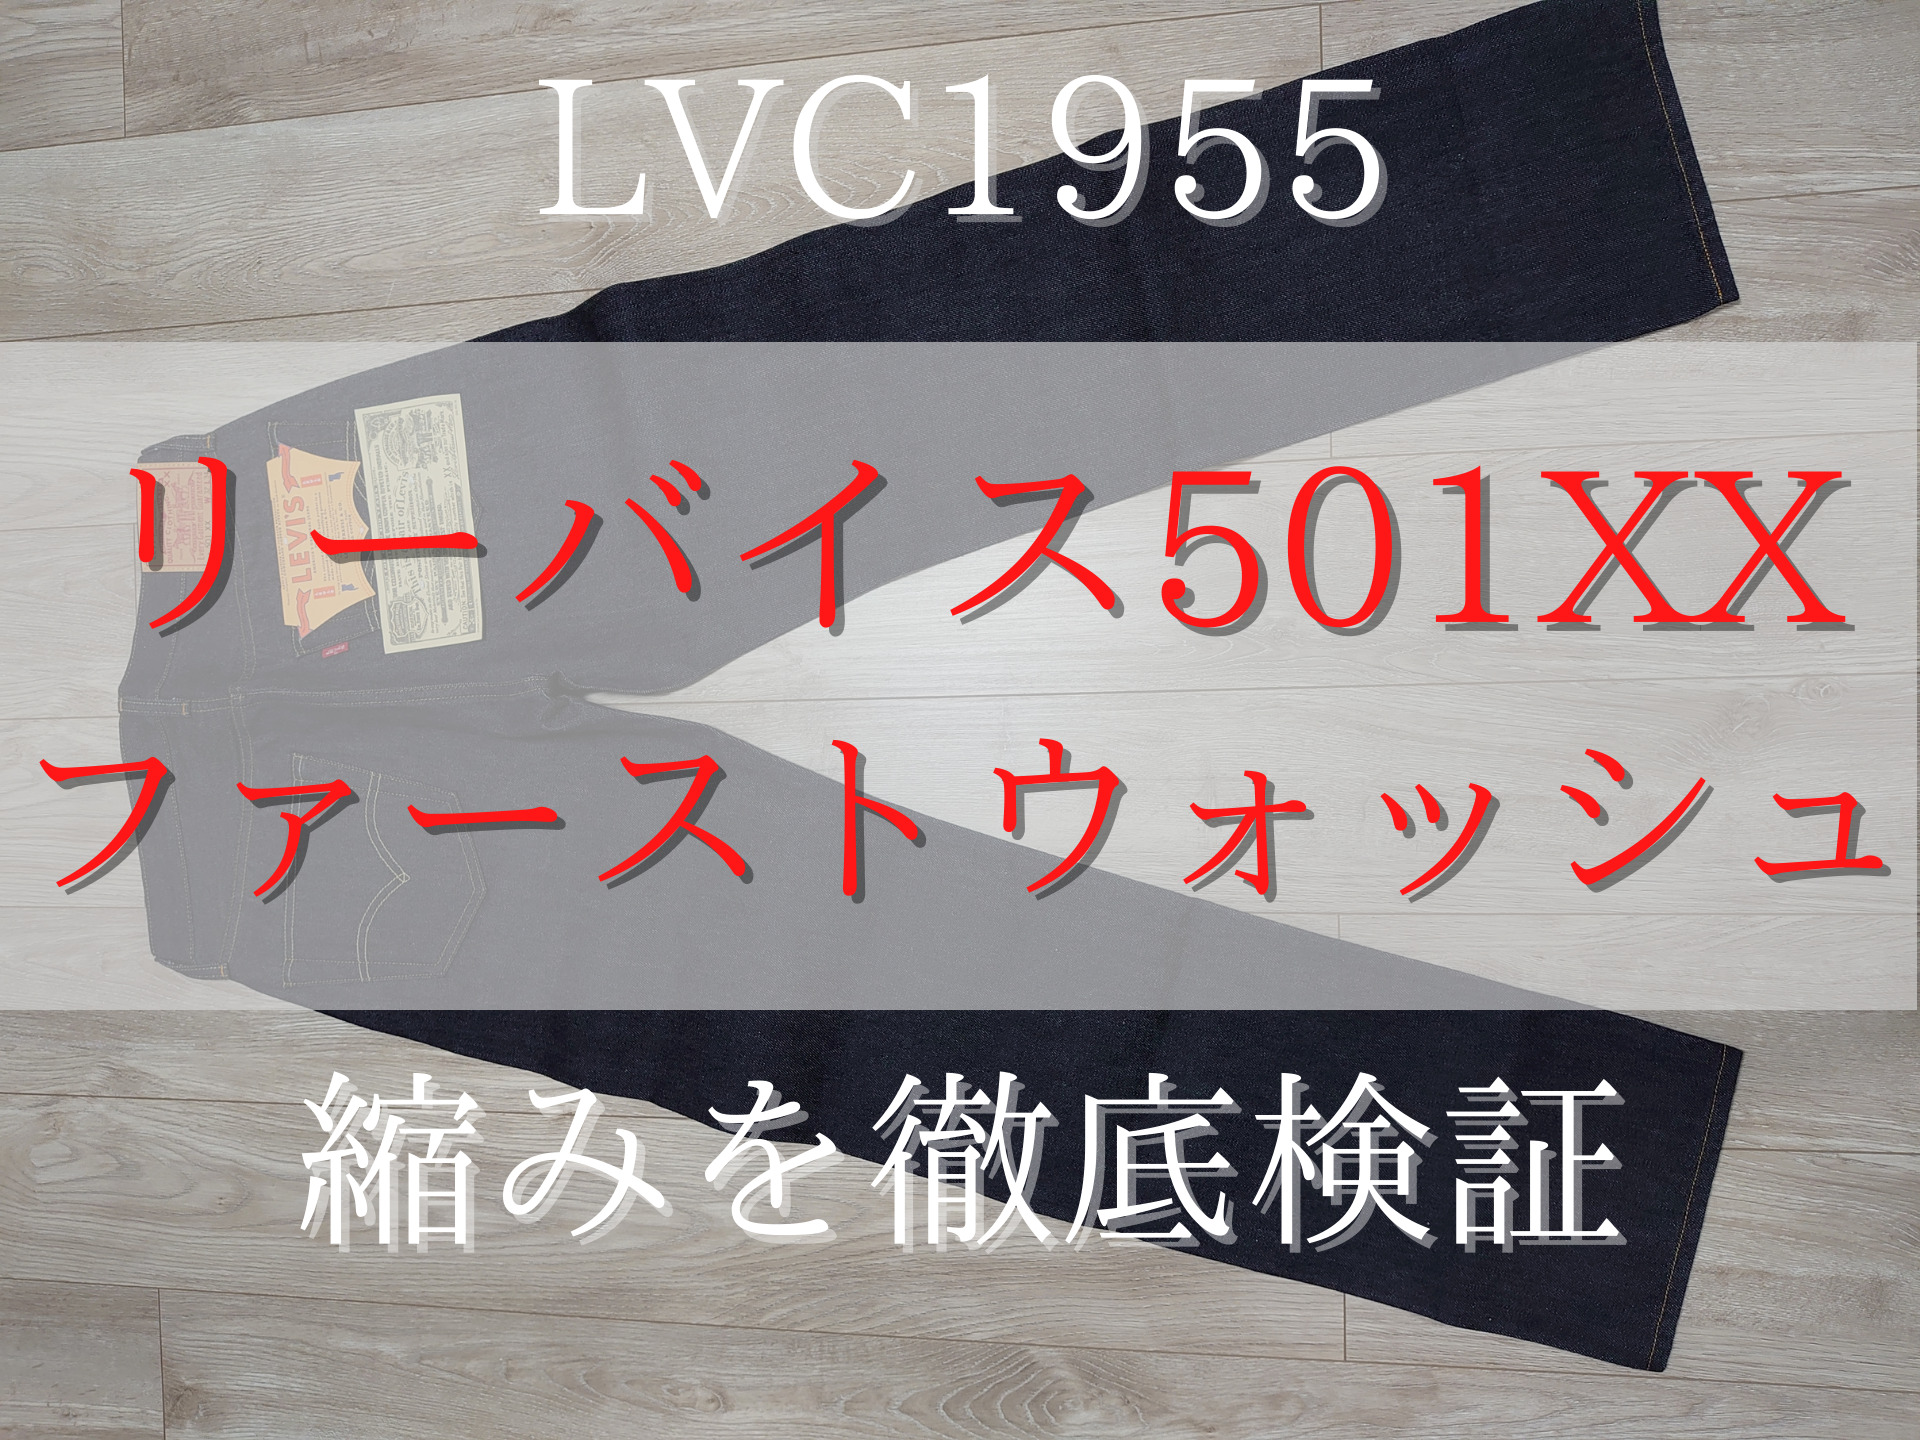 LVC1955-アイキャッチ